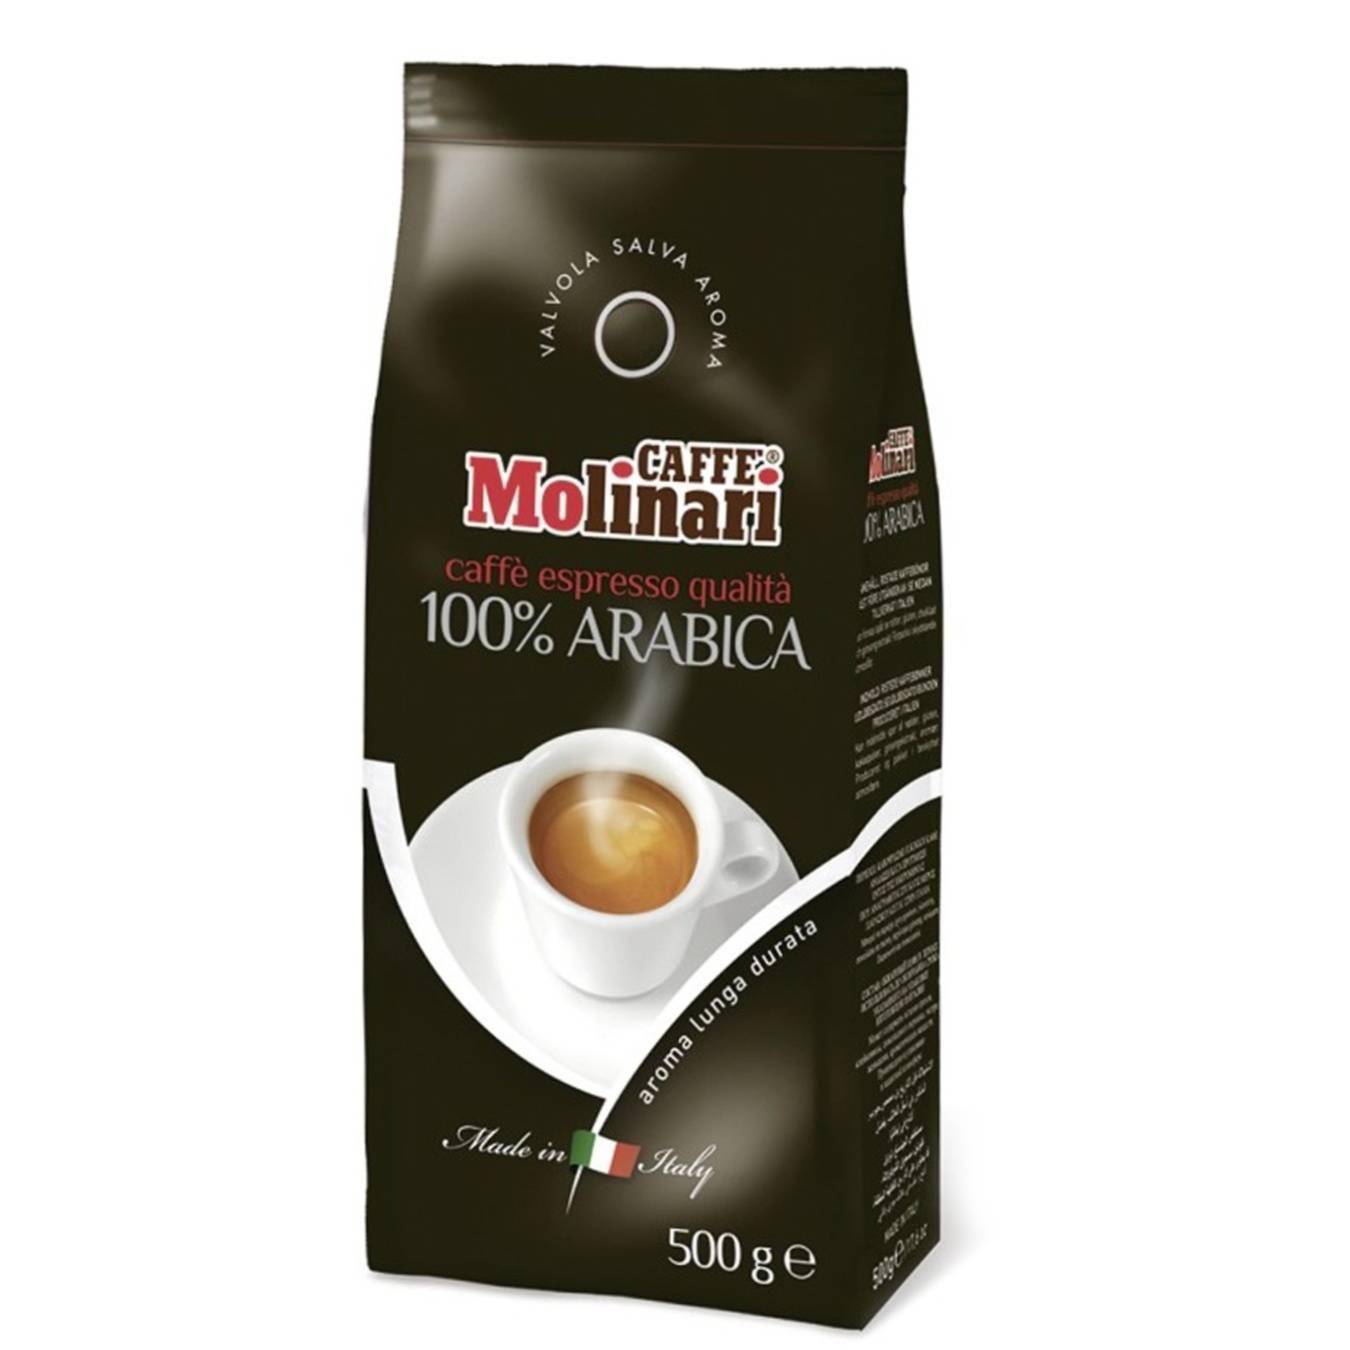 Кофе «молинари» (molinari): описание аромата, производитель, отзывы